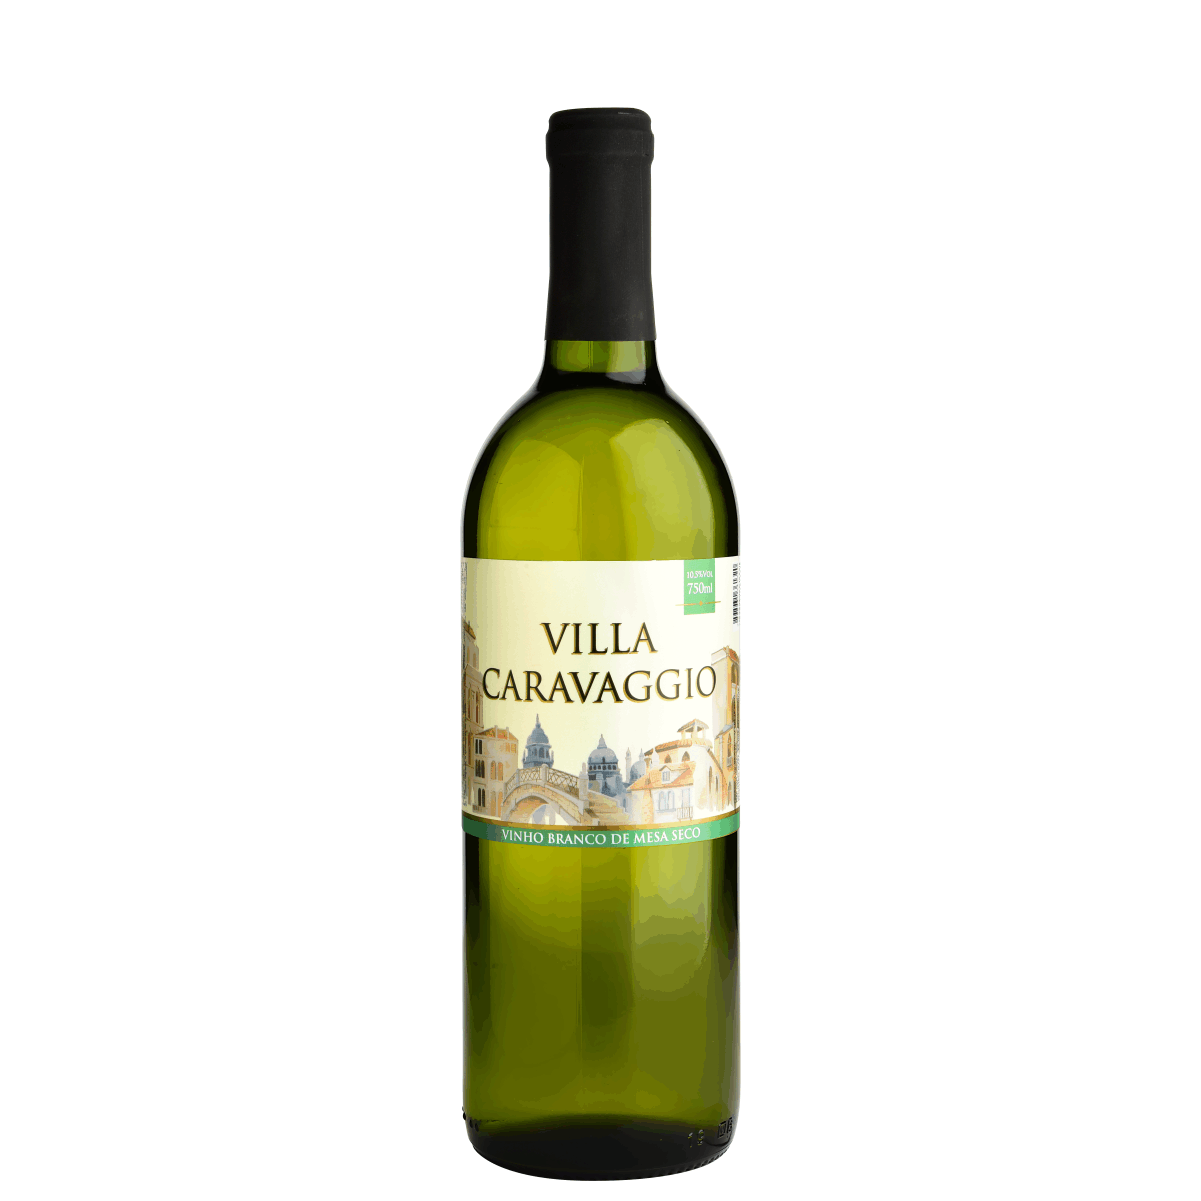 Vinho Branco de Mesa Seco 750ml Villa Caravaggio